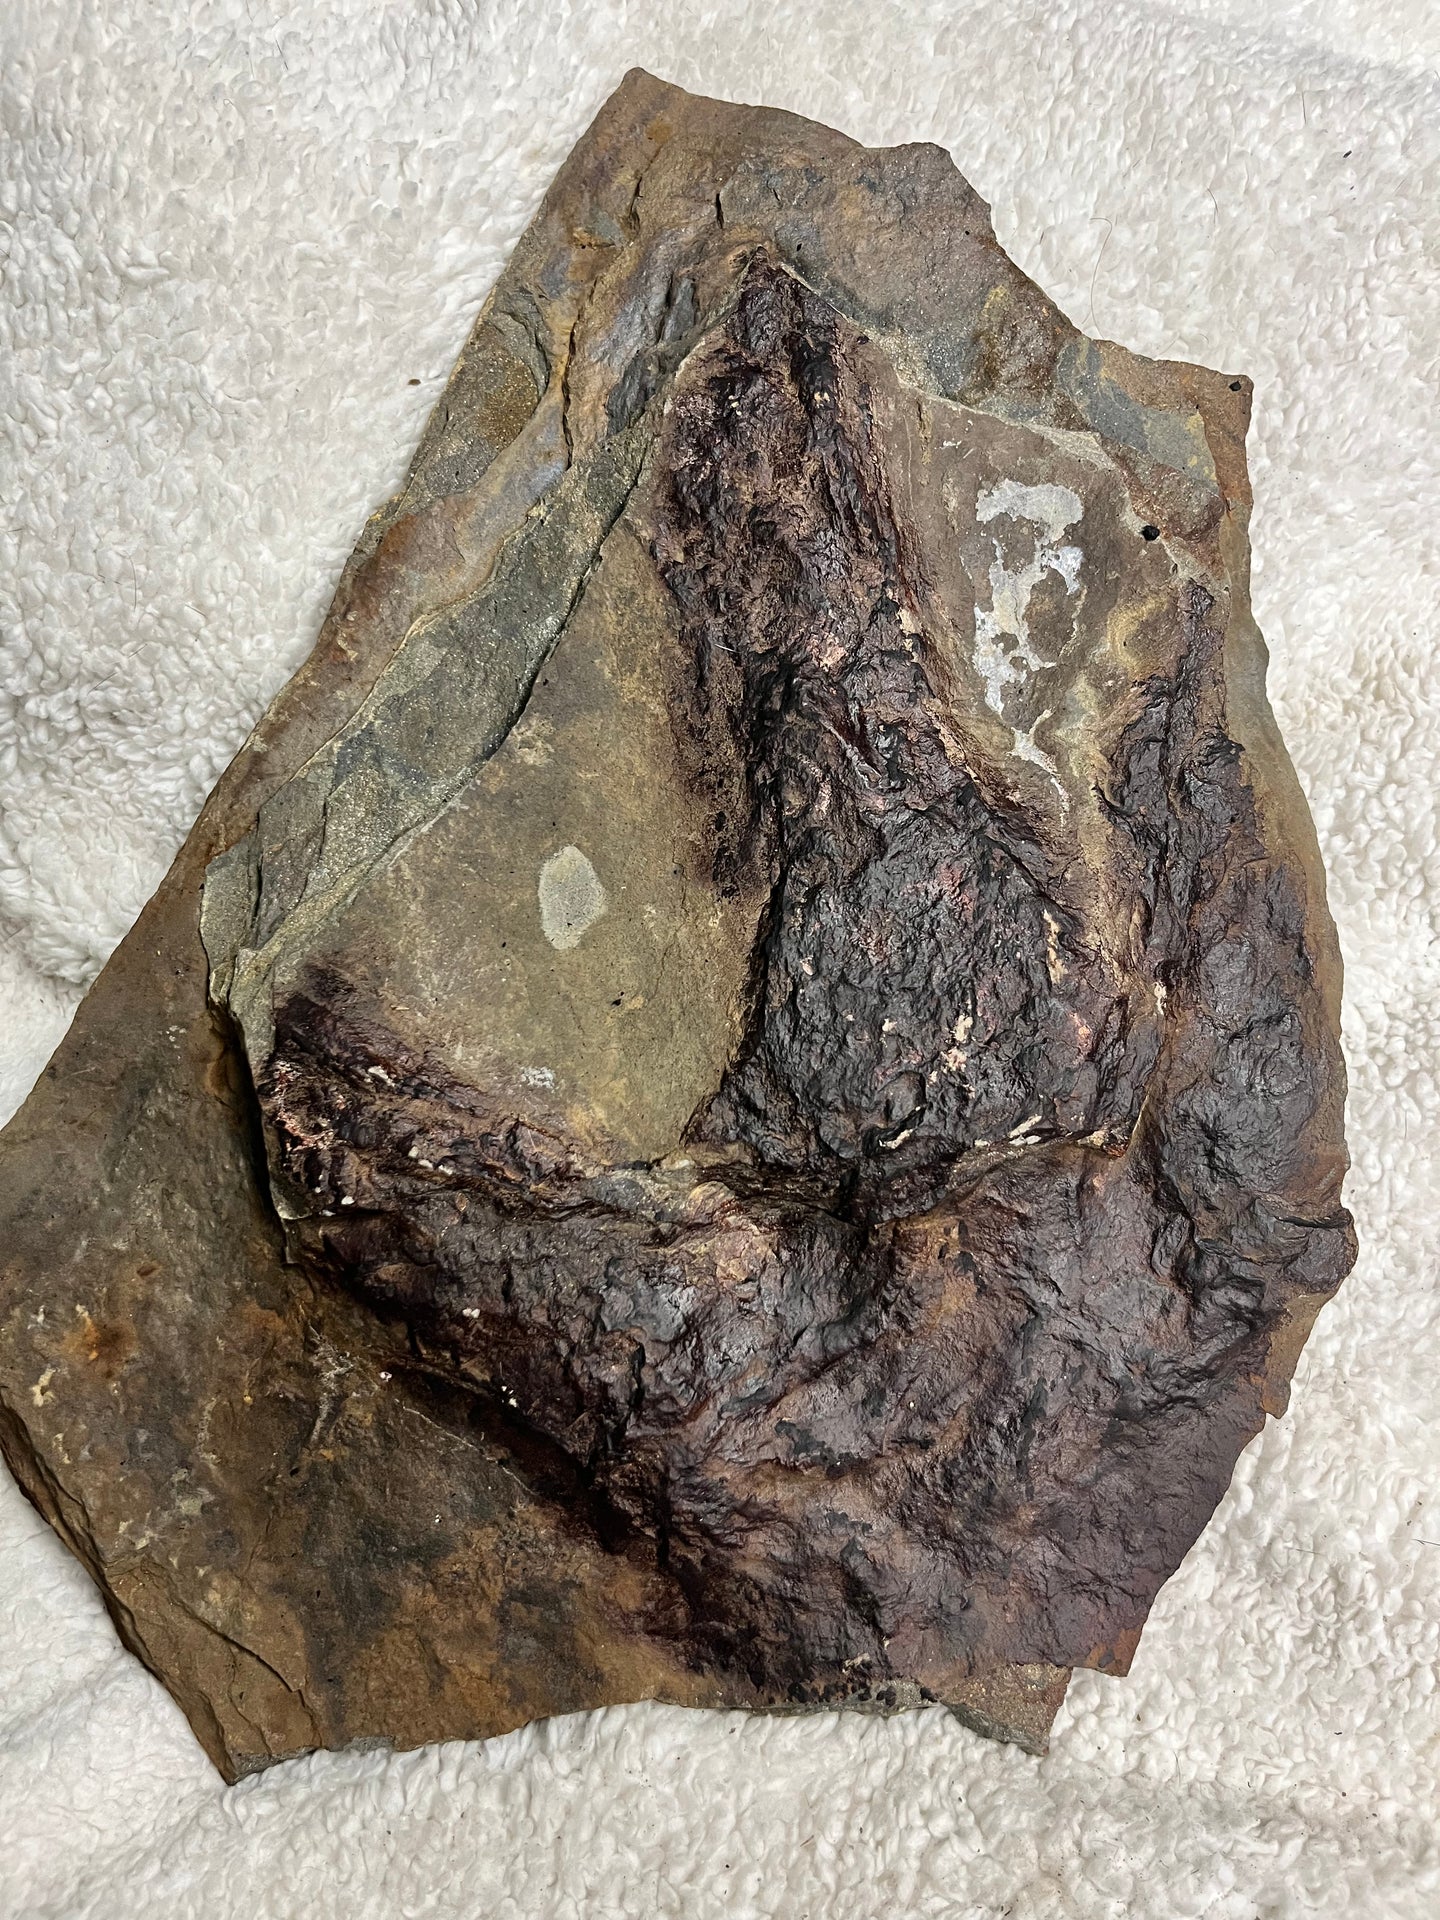 Massive Raised Single Fossil Dinosaur Footprint, Eubrontes